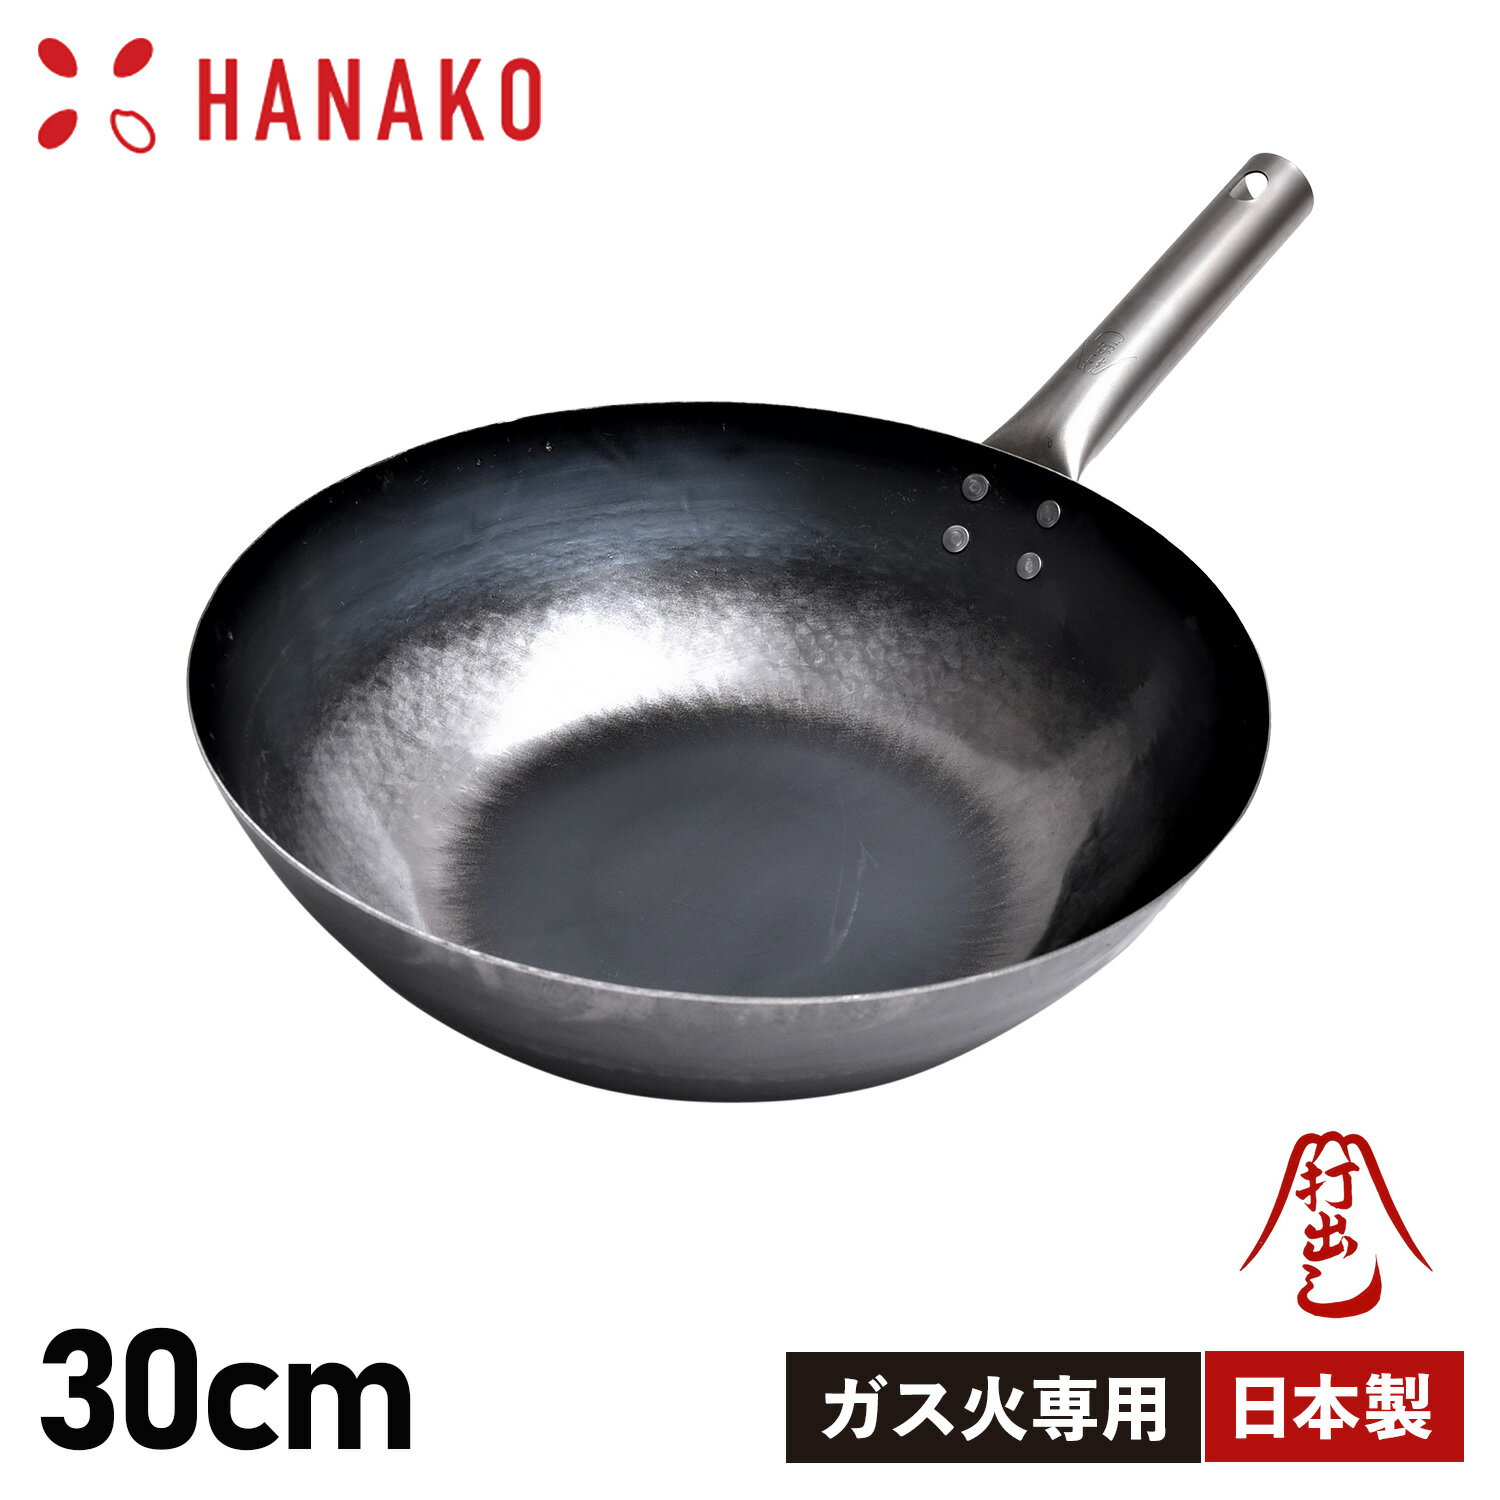 ハナコ HANAKO フライパン 30cm 深型 チタンハンドル ガス火専用 打出し製法 打出し炒め鍋 TITANIUM HANDLE H-30